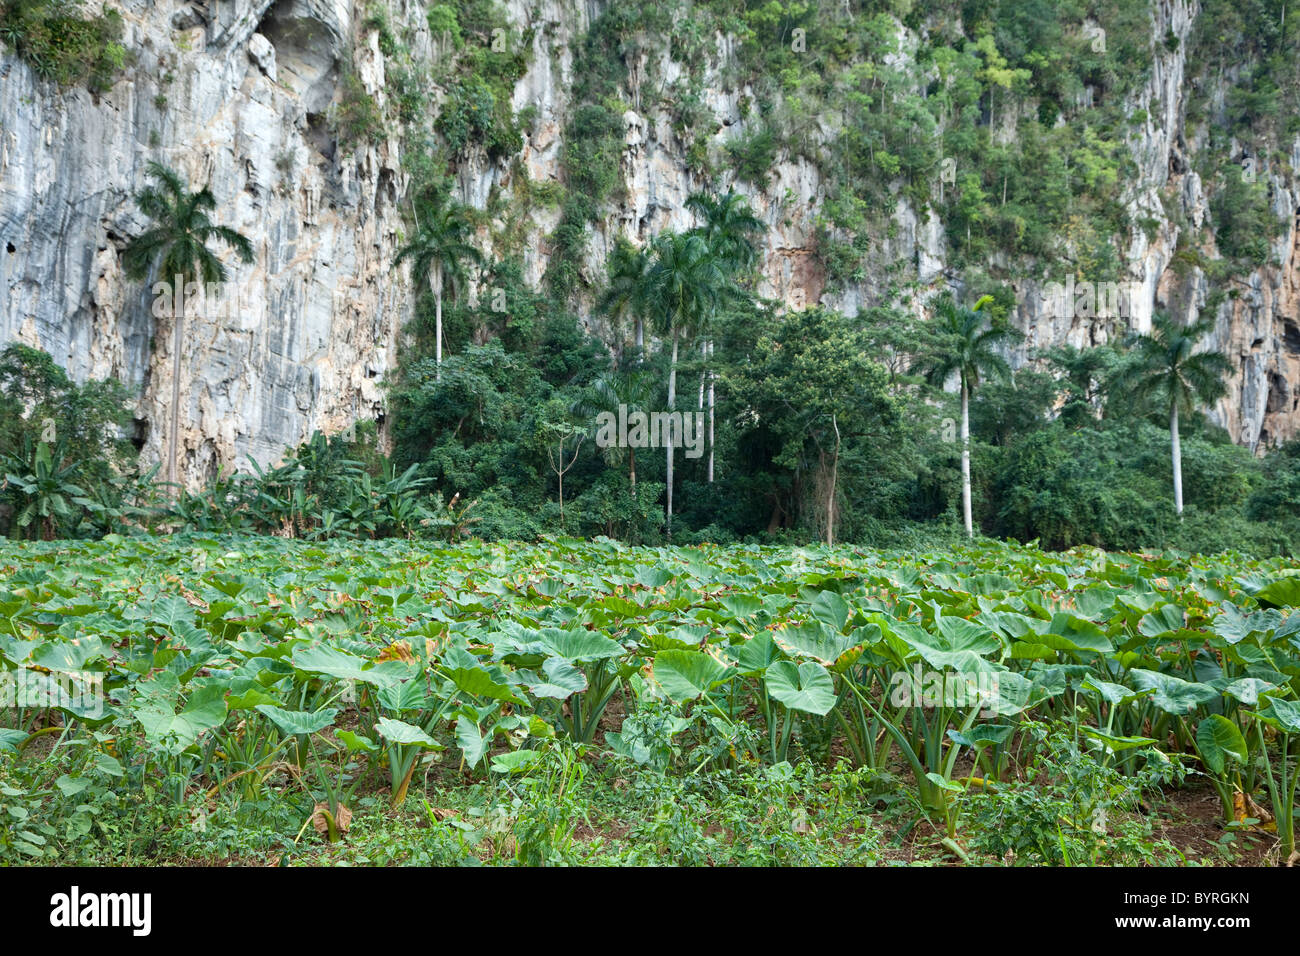 Kuba, Pinar Del Rio Region Viñales (Vinales) Bereich. Malanga Root, ein naher Verwandter von Taro, wächst in einem Feld. Stockfoto